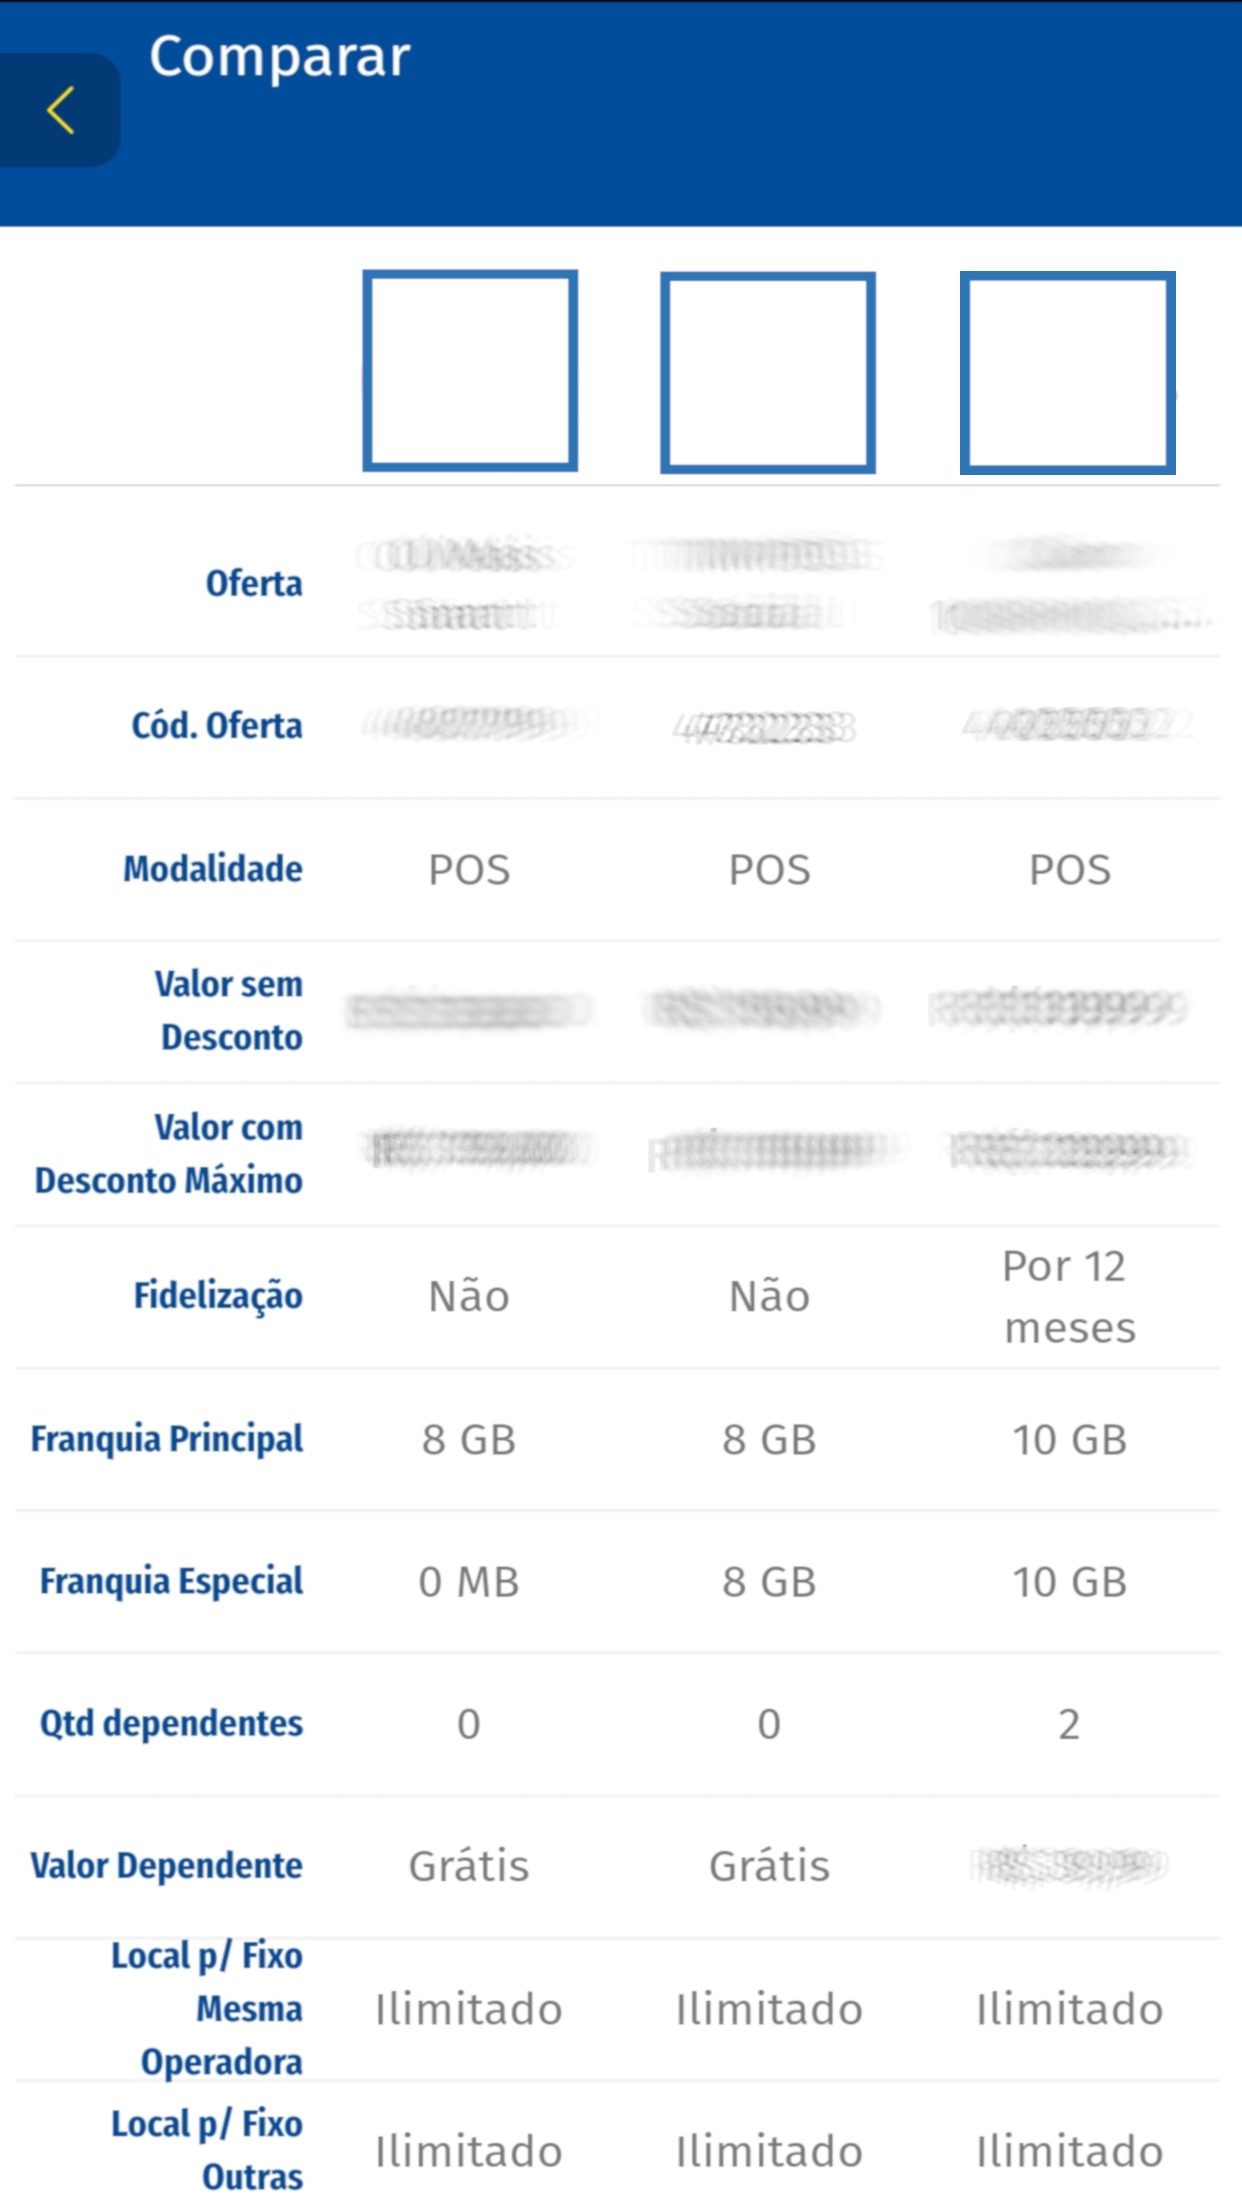 Screenshot do app Anatel Comparador Mobile